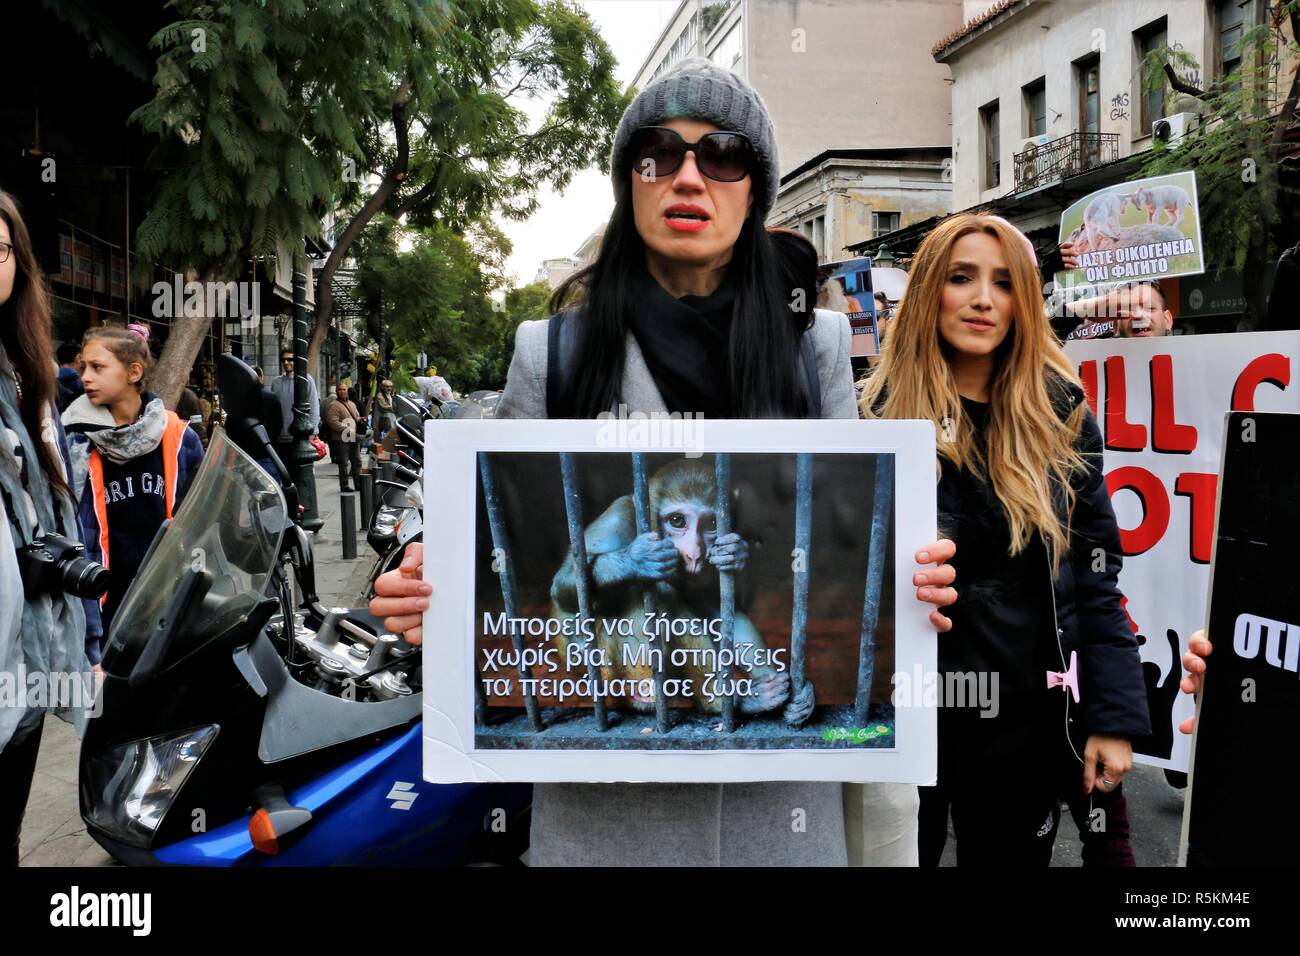 Un manifestant vu holding a placard pendant la manifestation. Militants des droits de l'animal démontrent à Athènes contre l'abus des animaux, de la violence, les mauvais traitements envers les animaux et la promotion d'un mode de vie végétalien. Banque D'Images